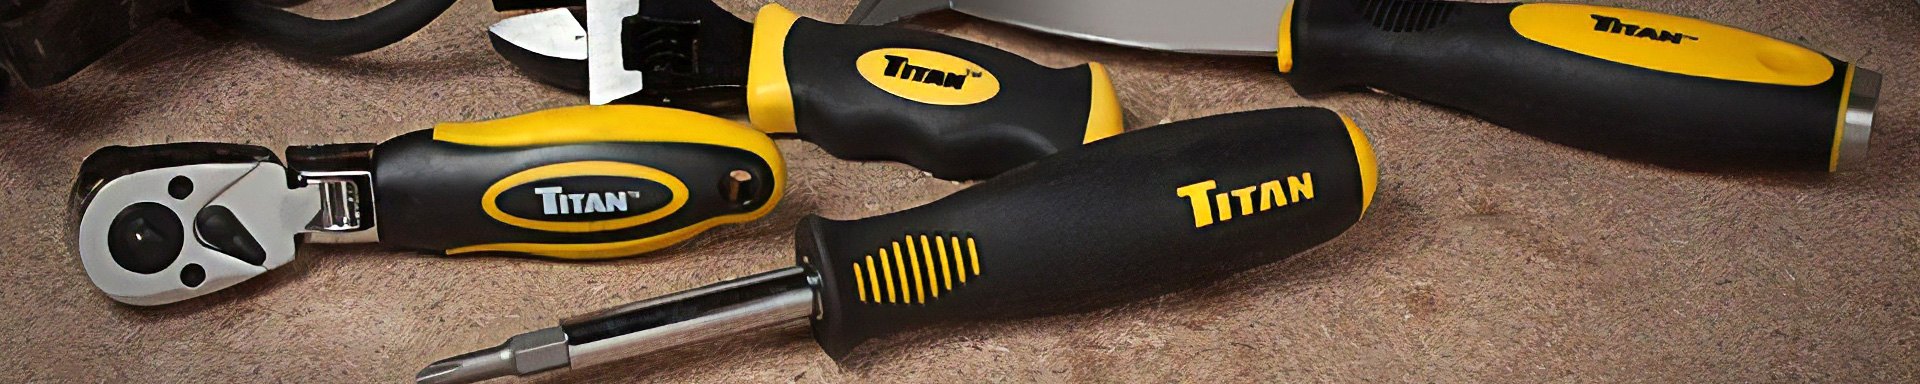 Titan Tools Spark Plug & Ignition Tools